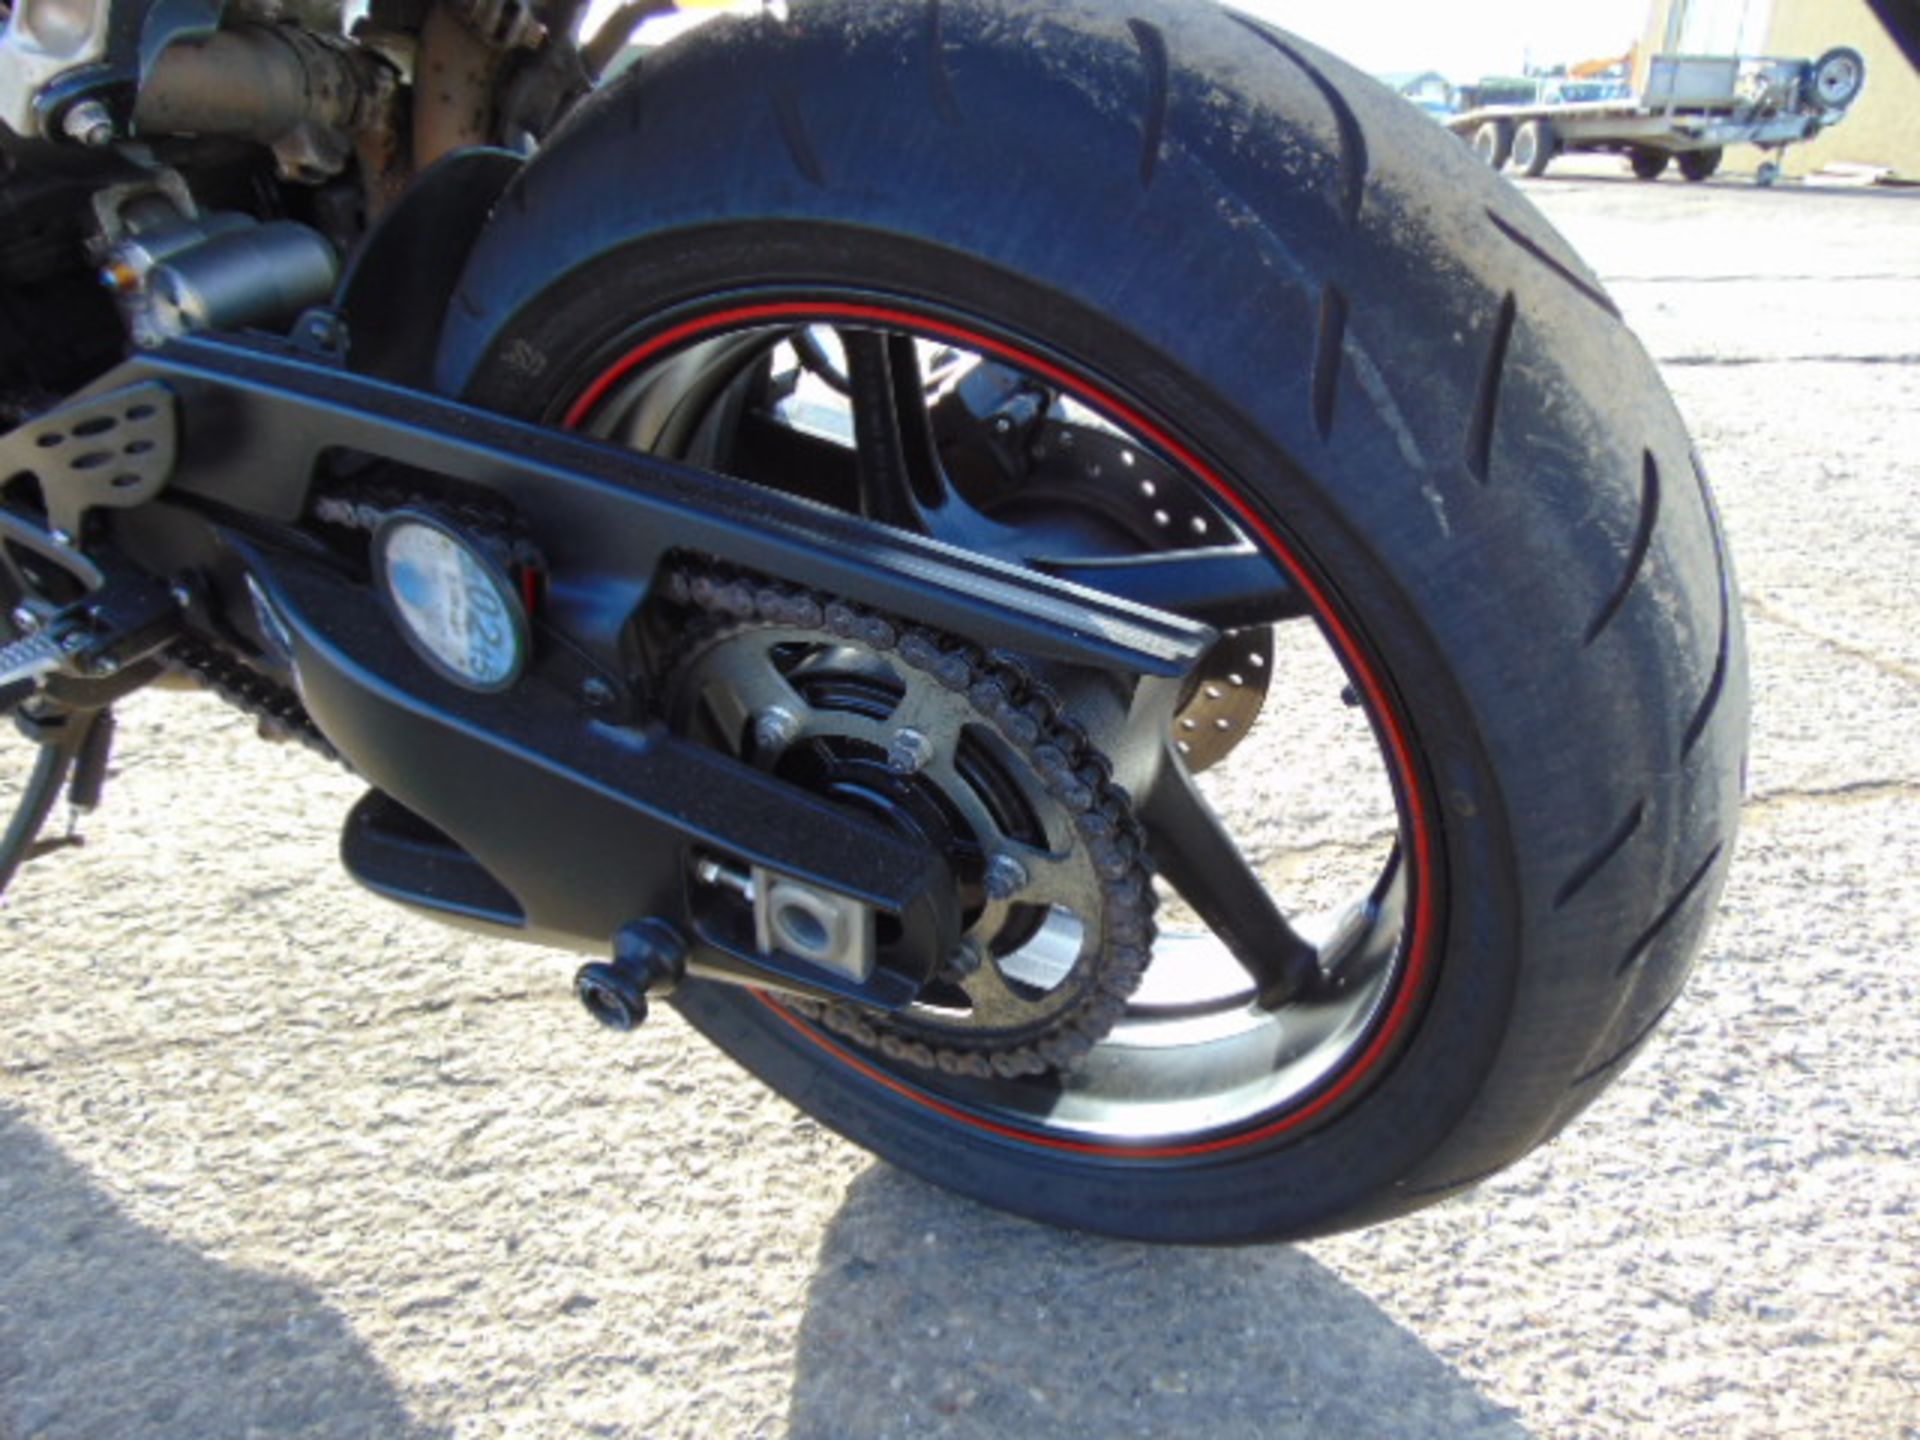 2013 Yamaha YZF-R1 Superbike - Image 18 of 27